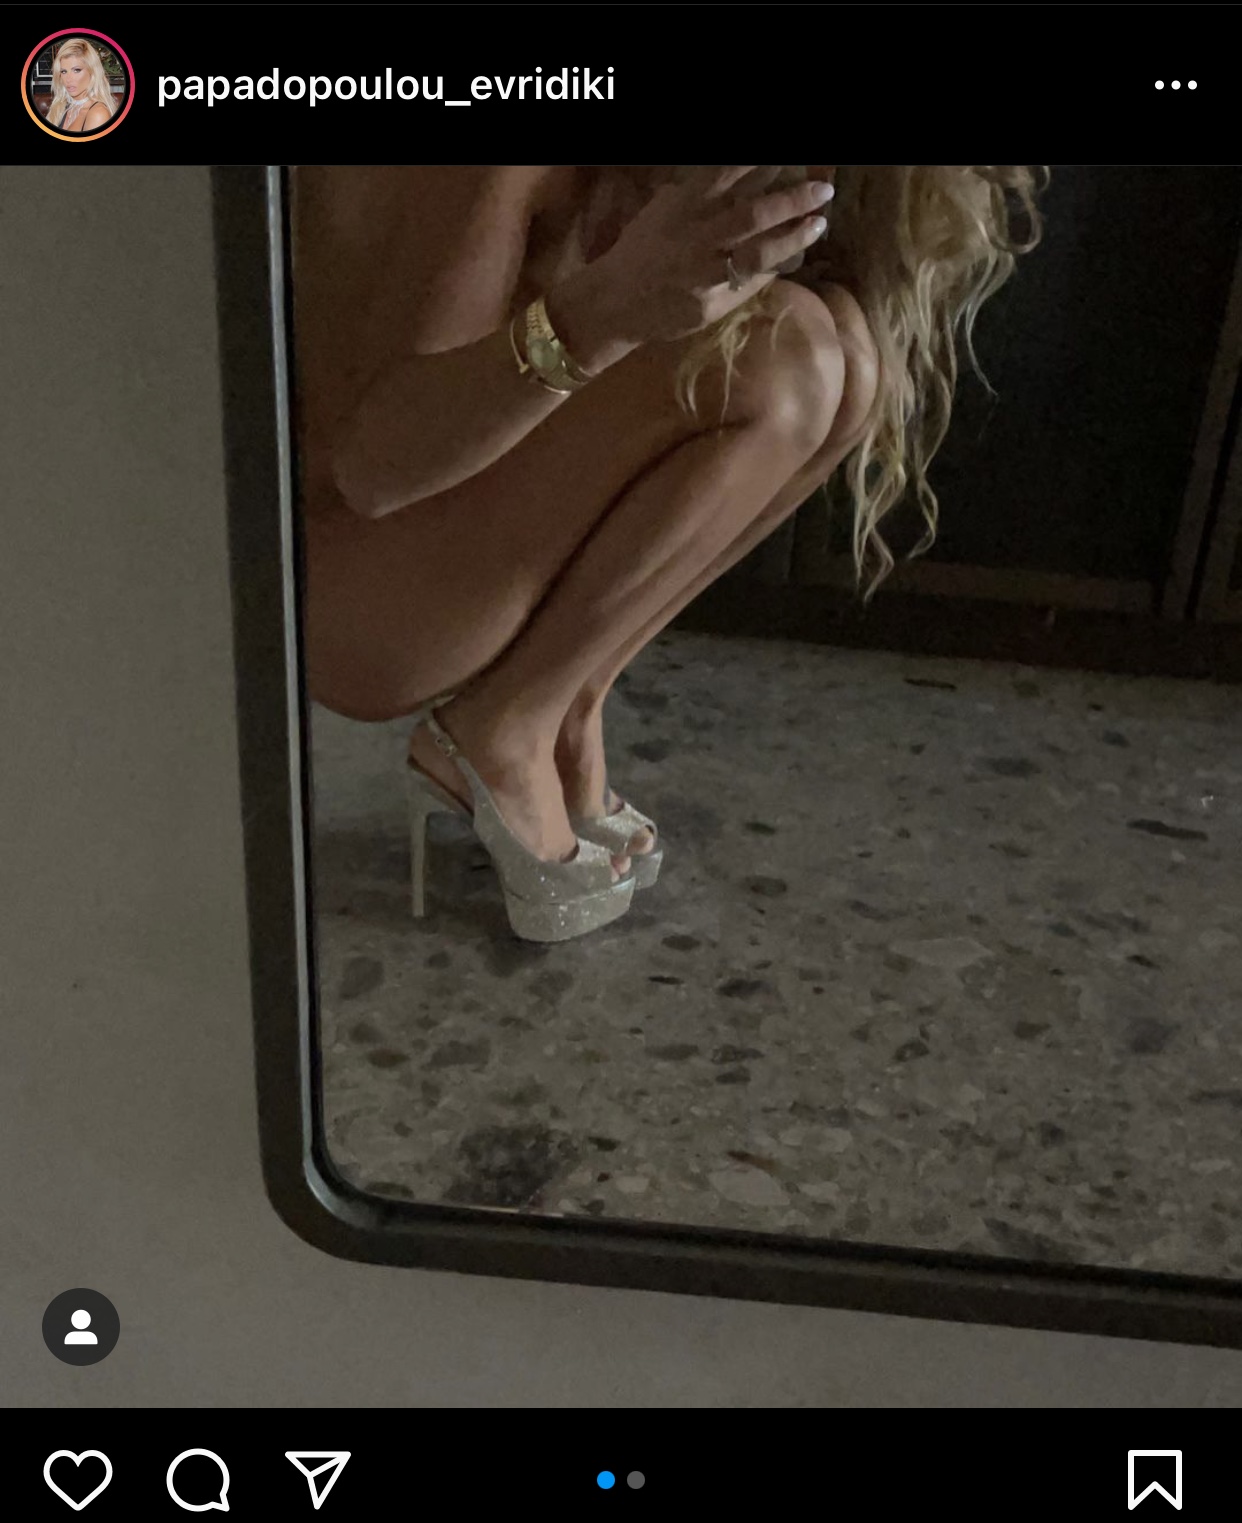 Γυμνή στο Instagram η Ευρυδίκη Παπαδοπούλου 